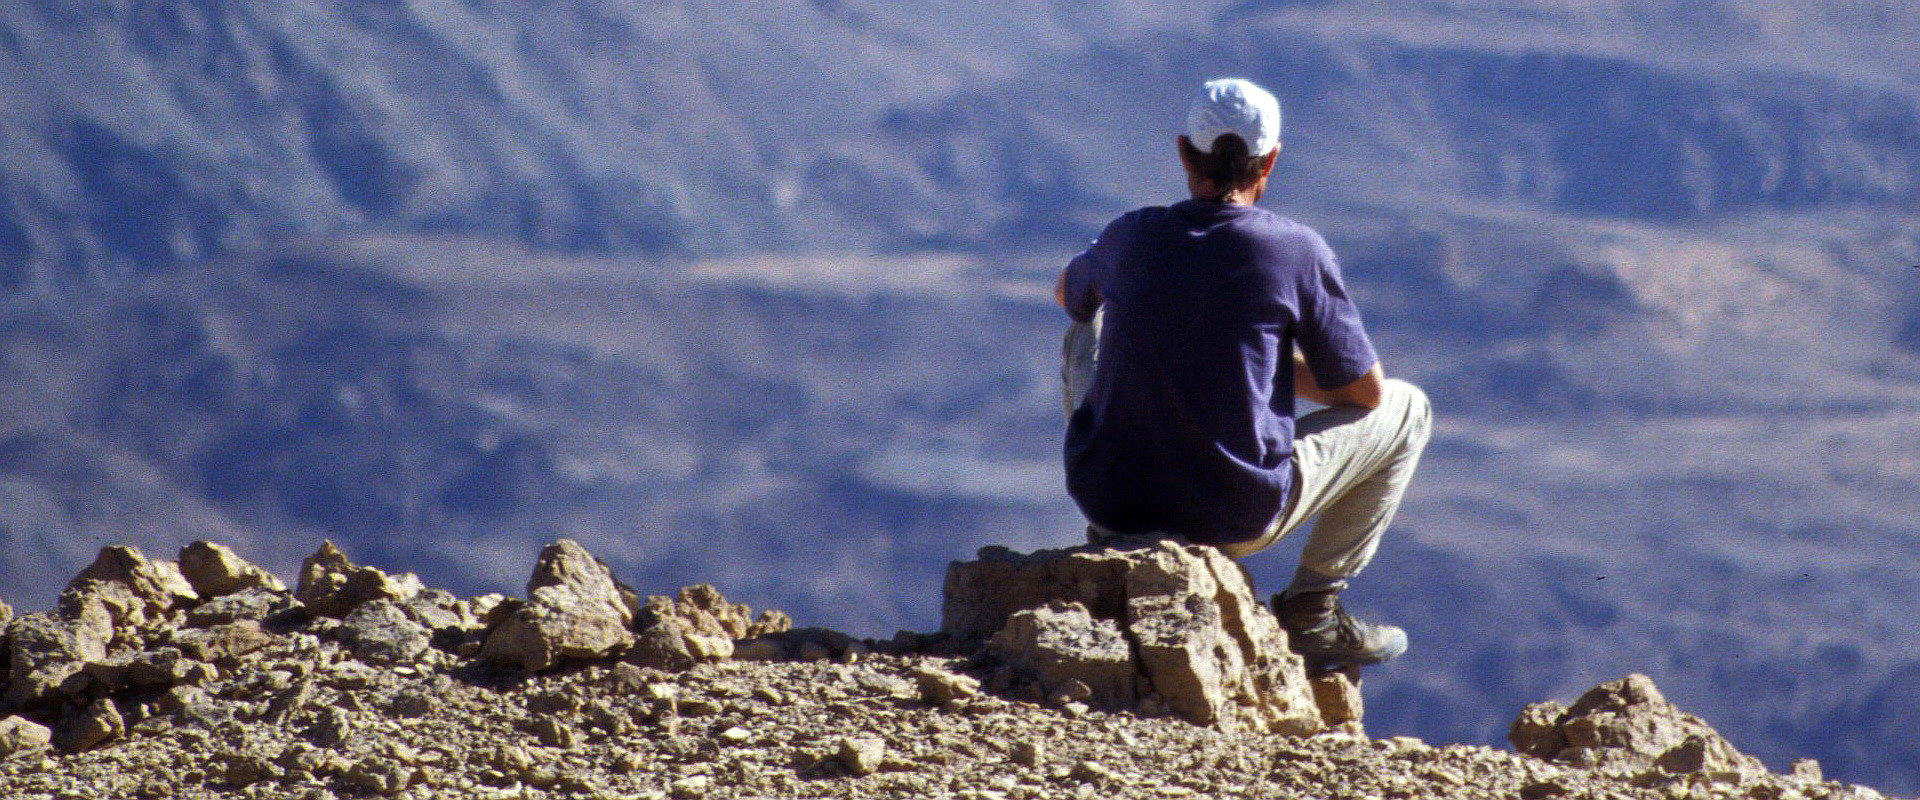 Hansjörg Lindenthaler Rastet auf einem Stein in Sinai und genießt die Ferne der Landschaft.